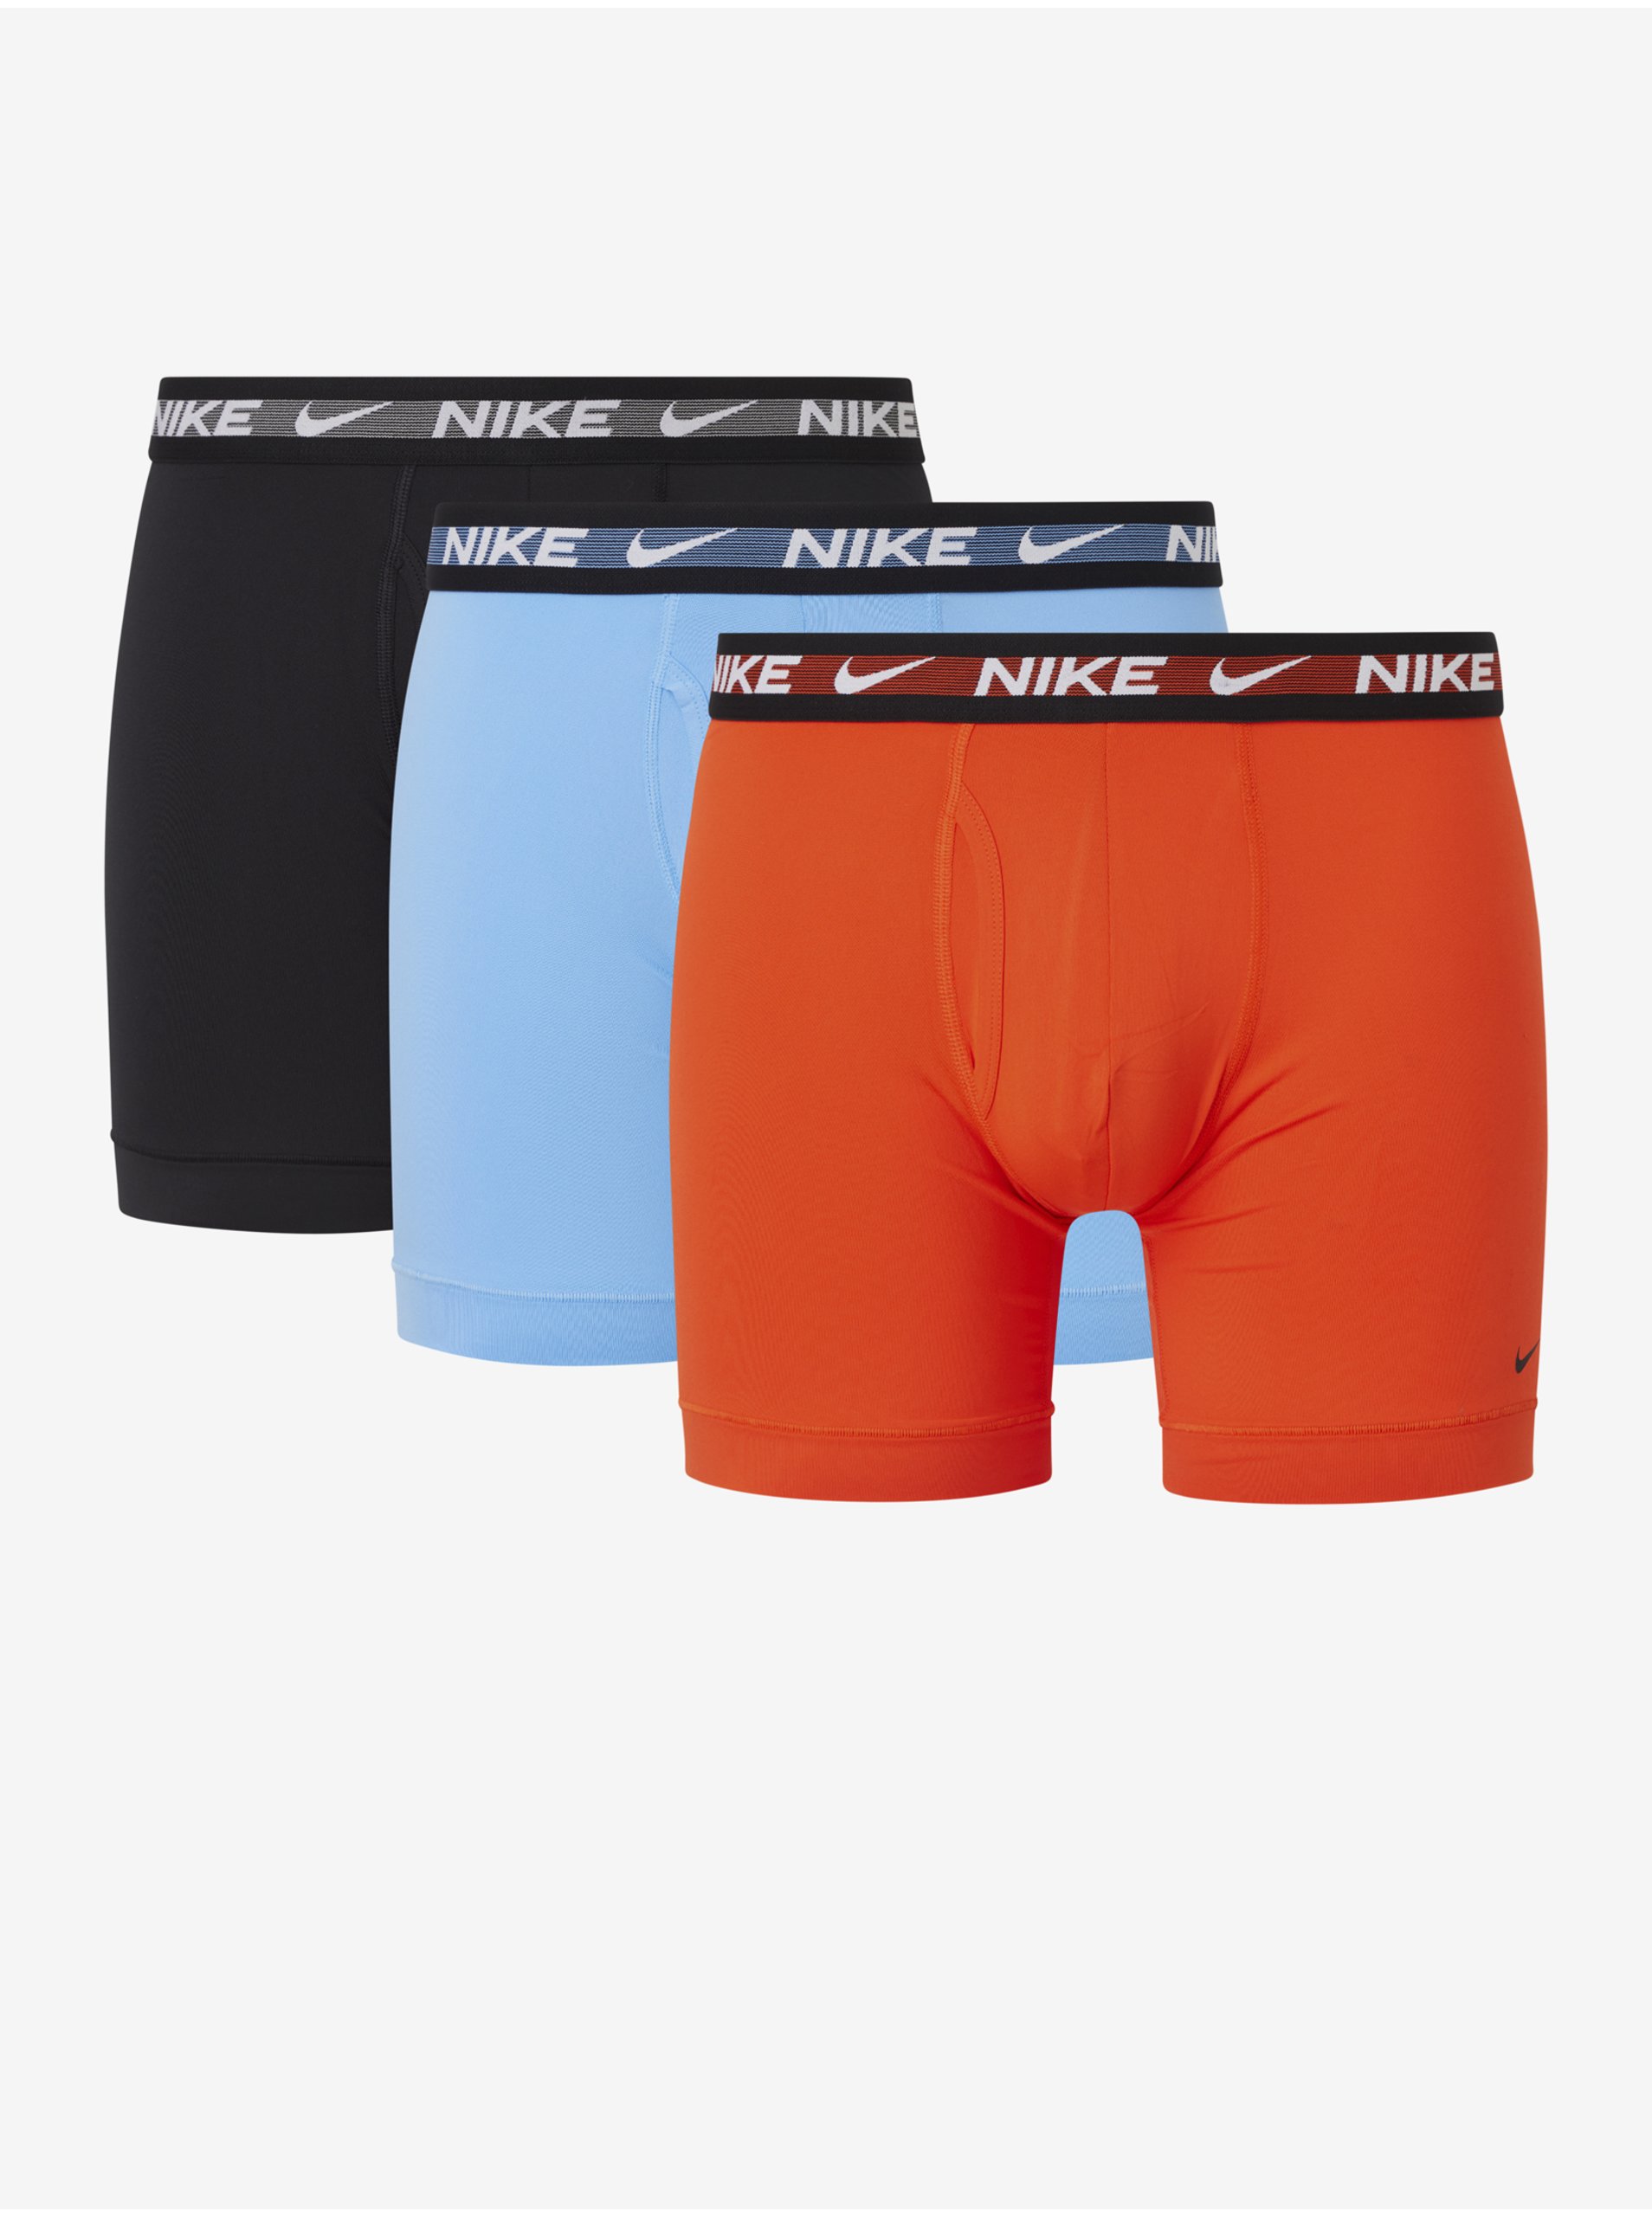 Levně Sada tří pánských boxerek v černé, světle modré a oranžové barvě Nike